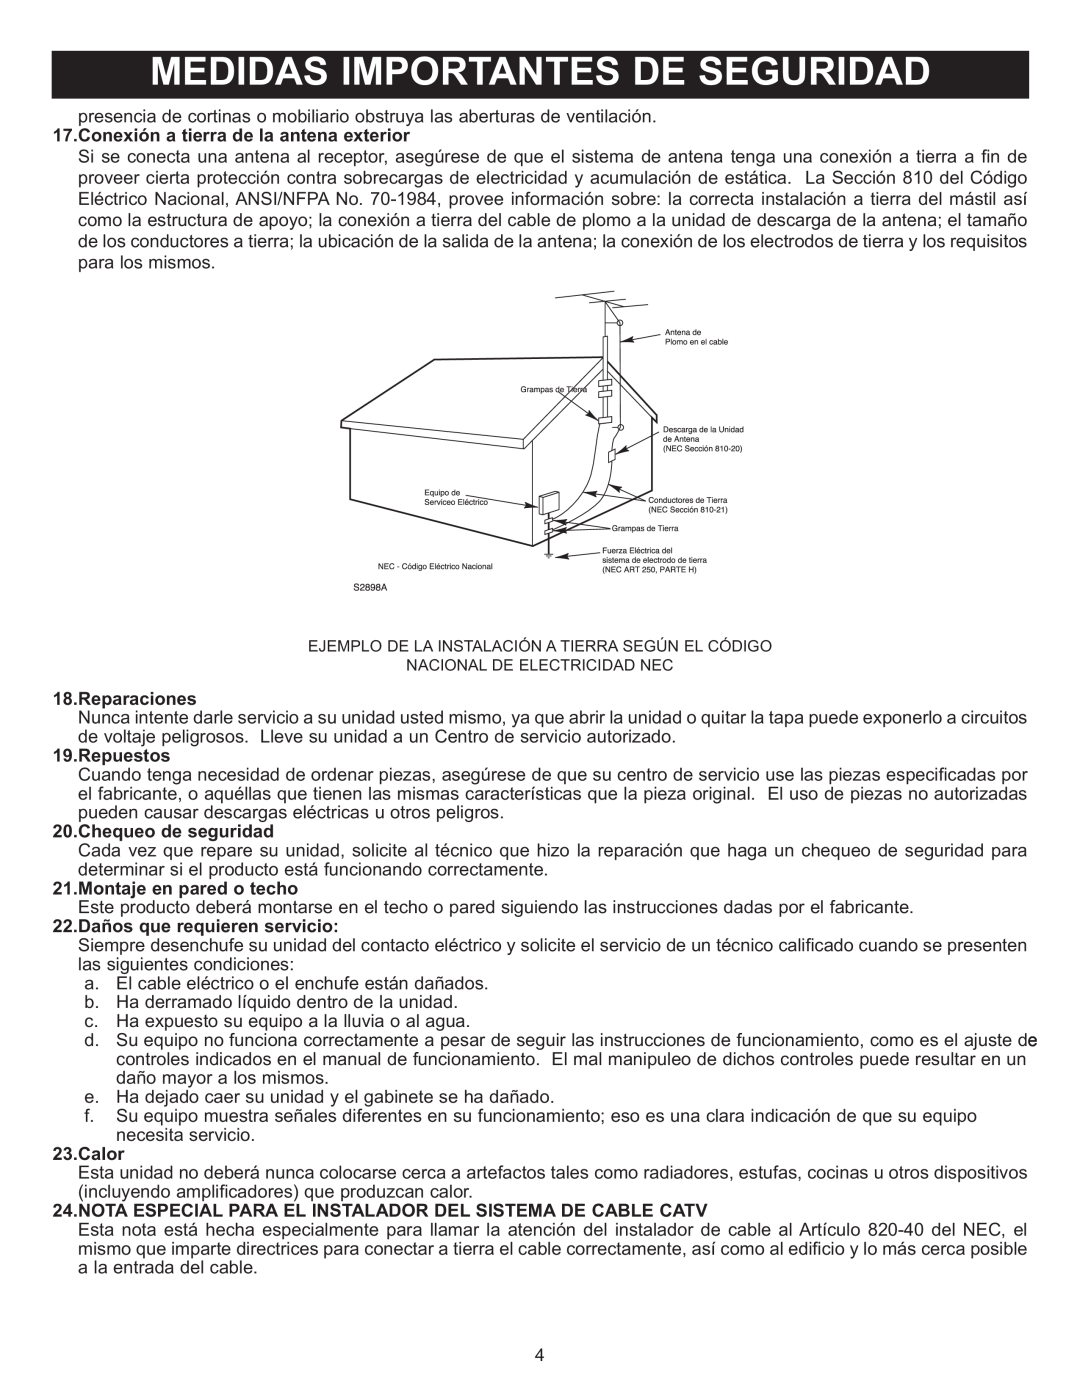 Memorex MIHT5005 manual Conexión a tierra de la antena exterior, Reparaciones, Repuestos, Chequeo de seguridad, Calor 